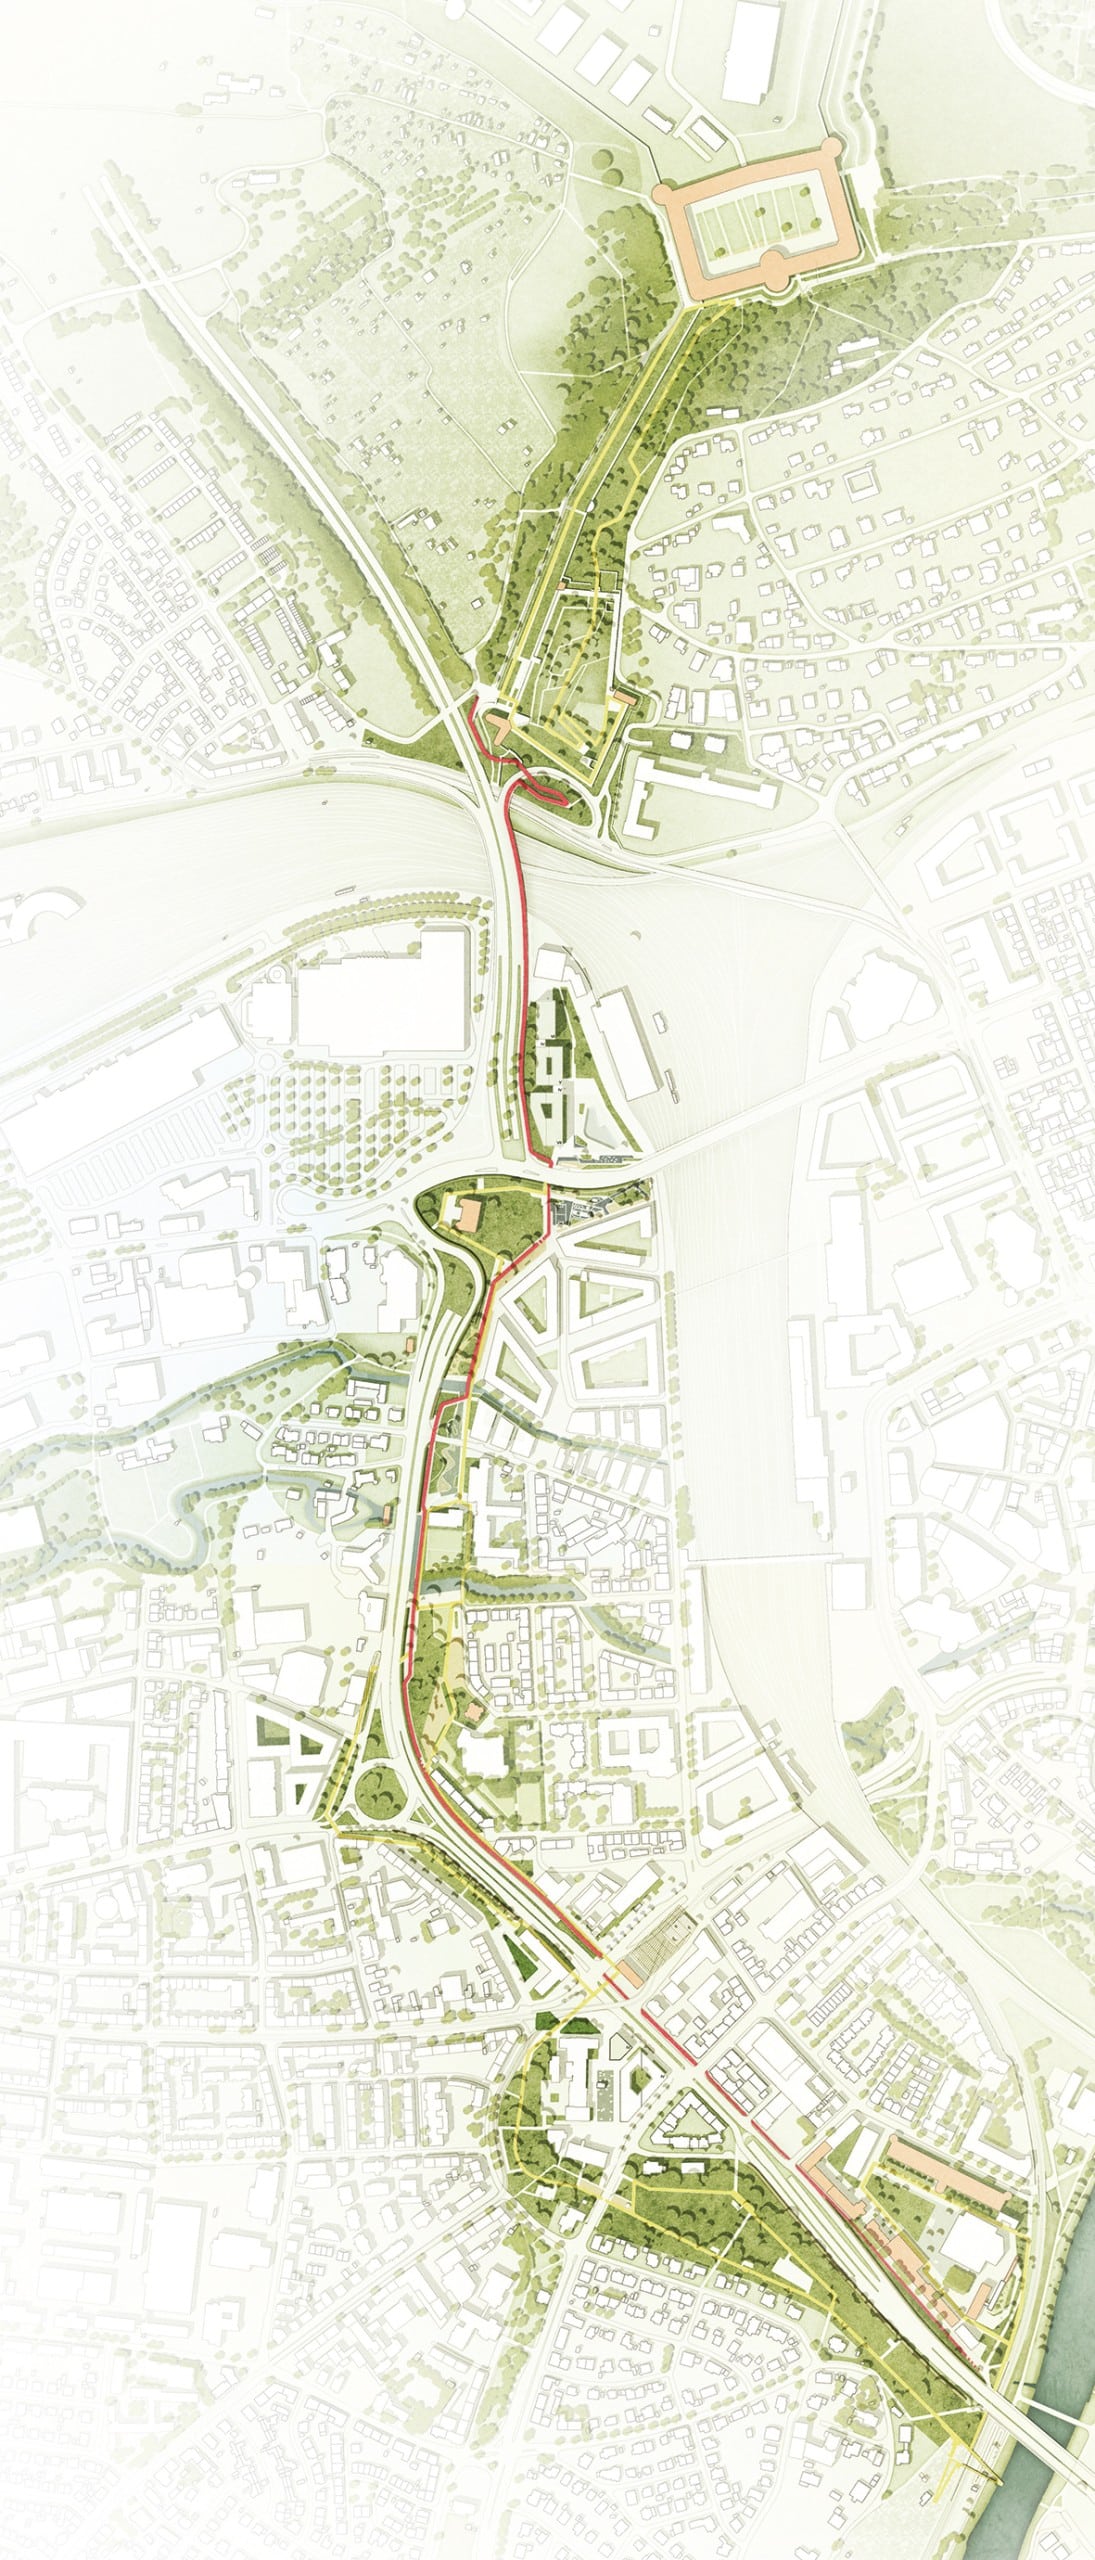 Lageplan zur Landesgartenschau Ulm 2030. Quelle: SINAI / Visualisierung: werk3.berlin